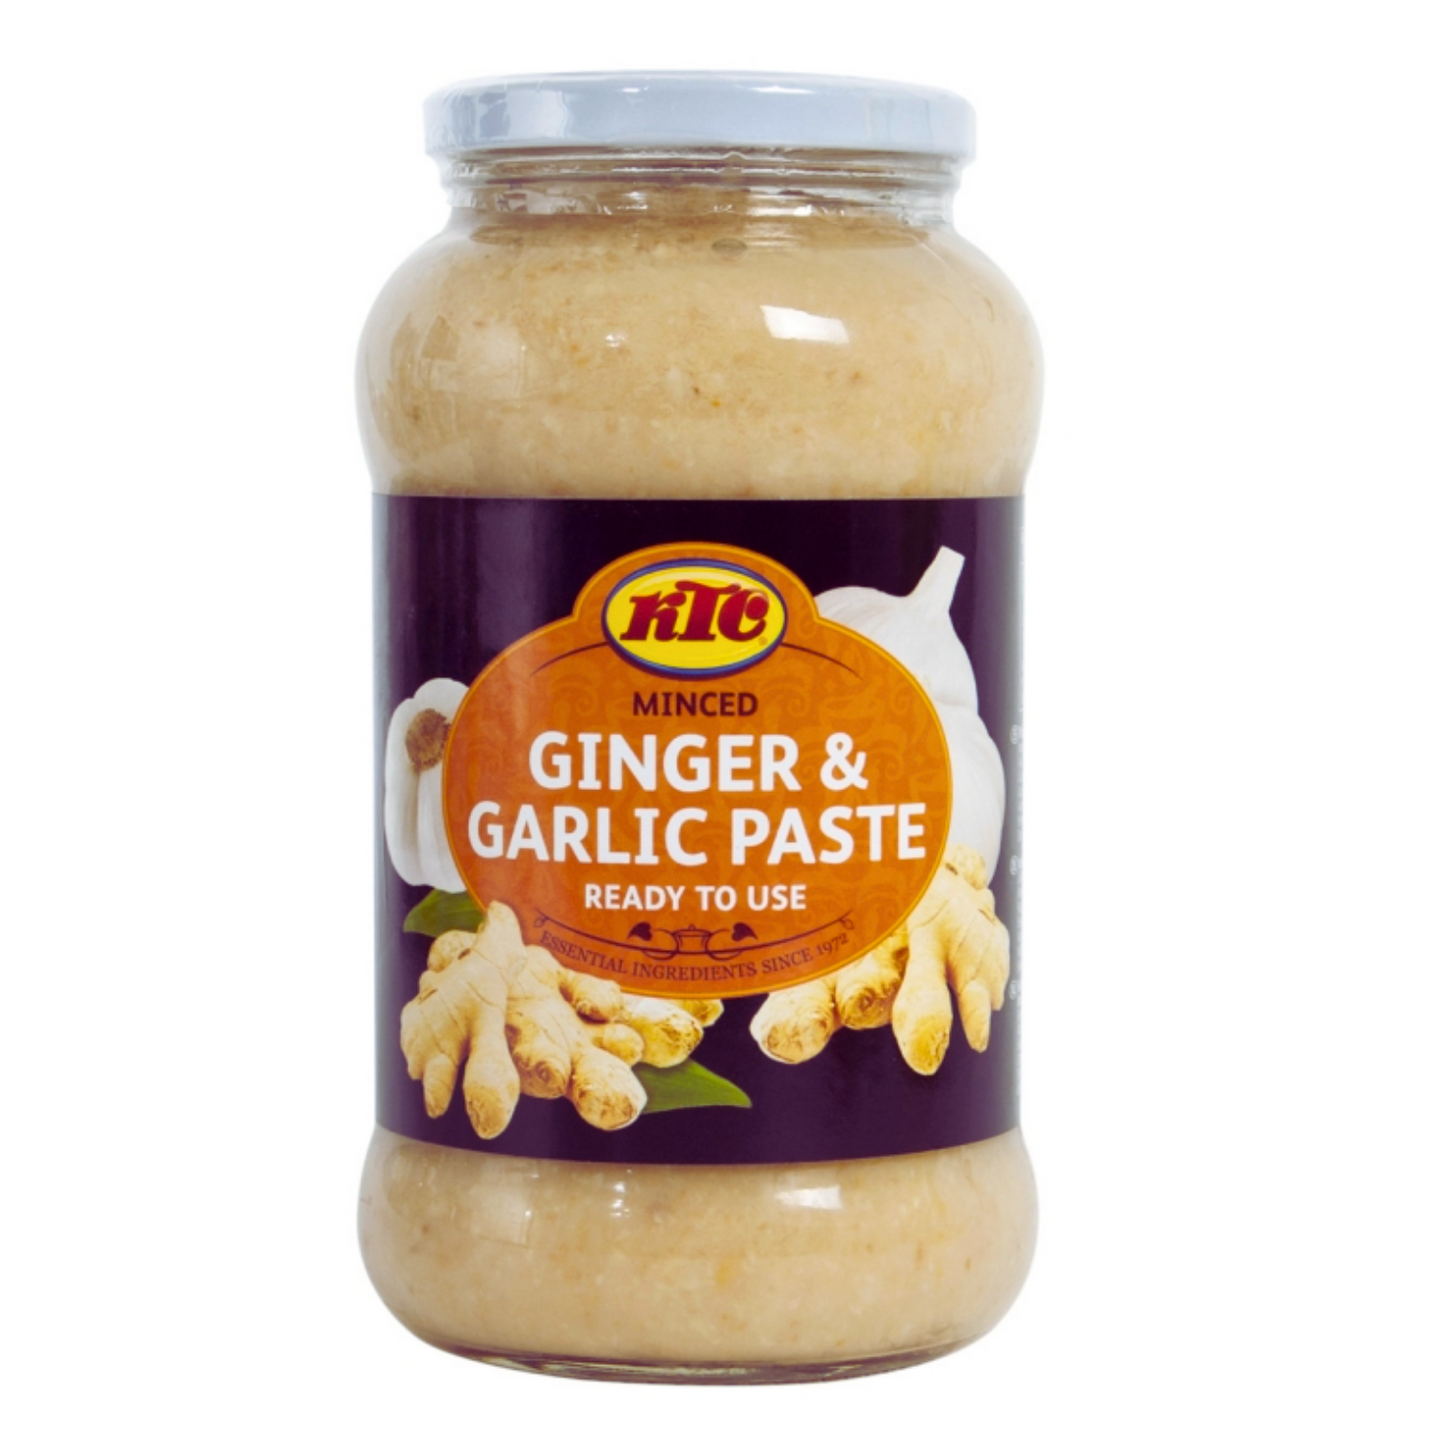 Garlic & Ginger Paste